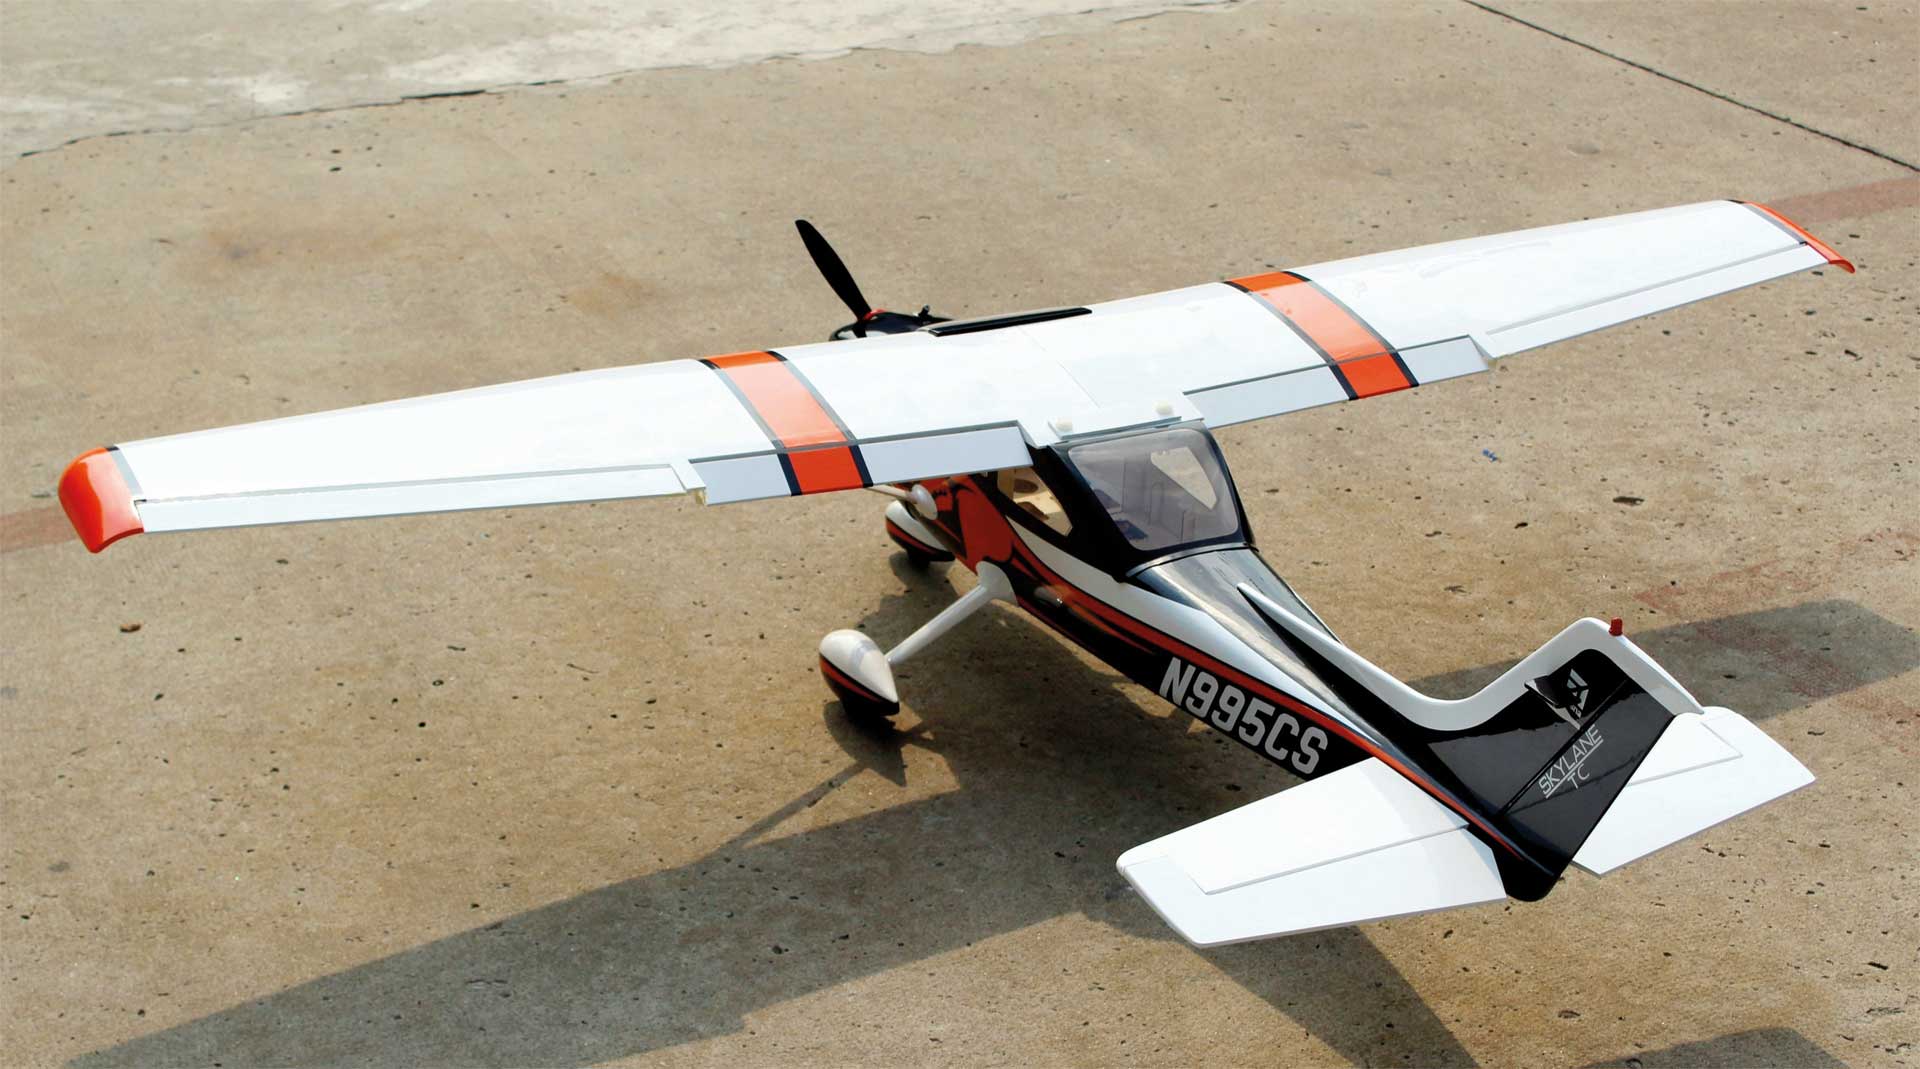 Cessna 182 Turbo Skylane Seagull Models